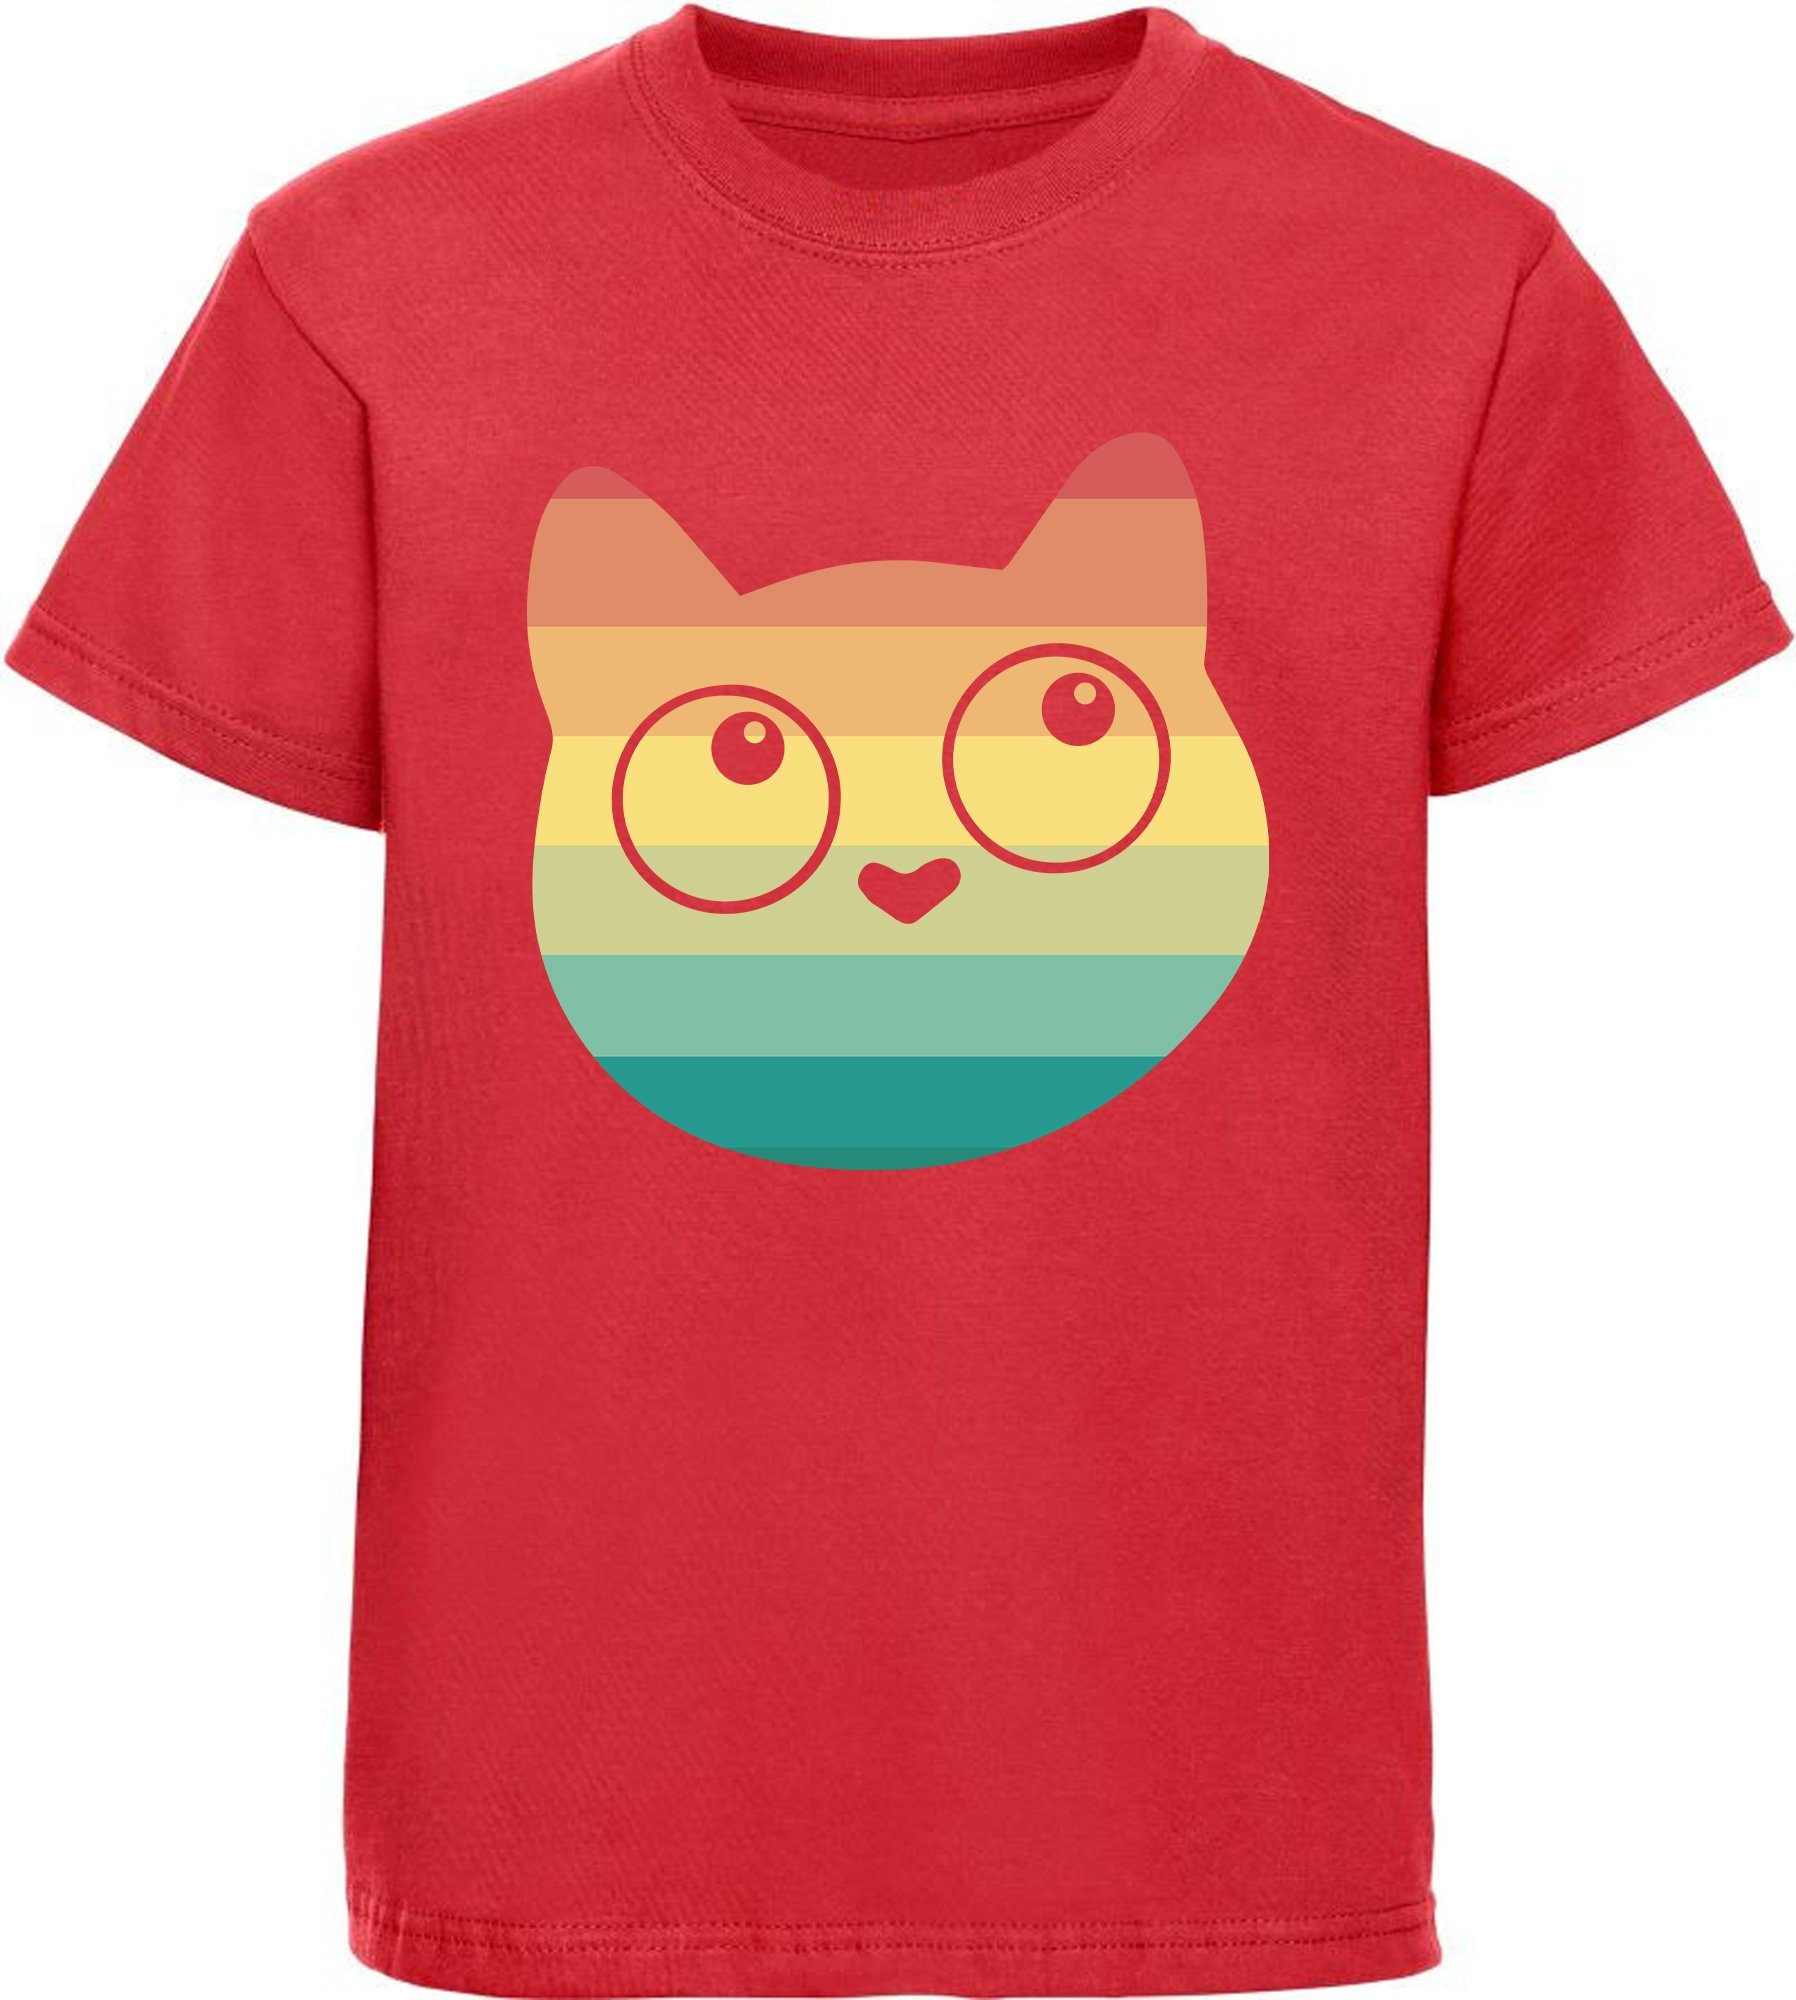 T-Shirt Katze, Mädchen rot, Retro mit rosa, Kitty schwarz, Baumwollshirt Print-Shirt Aufdruck i128 MyDesign24 mit weiß, bedrucktes